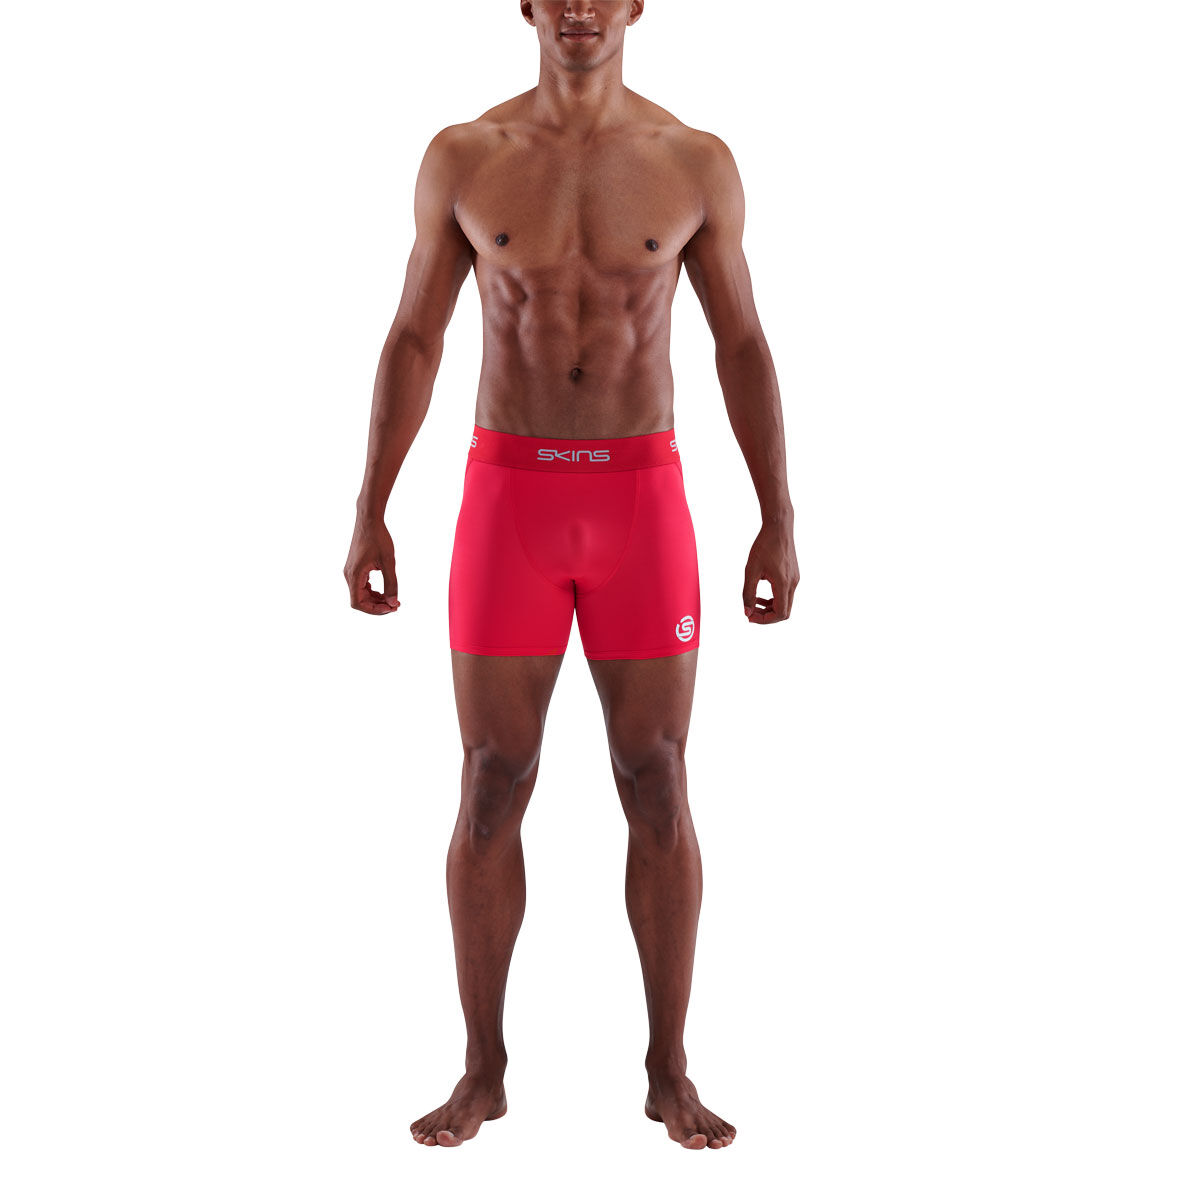 Diadora Compression Lite Mens Adults Skins Shorts Nude